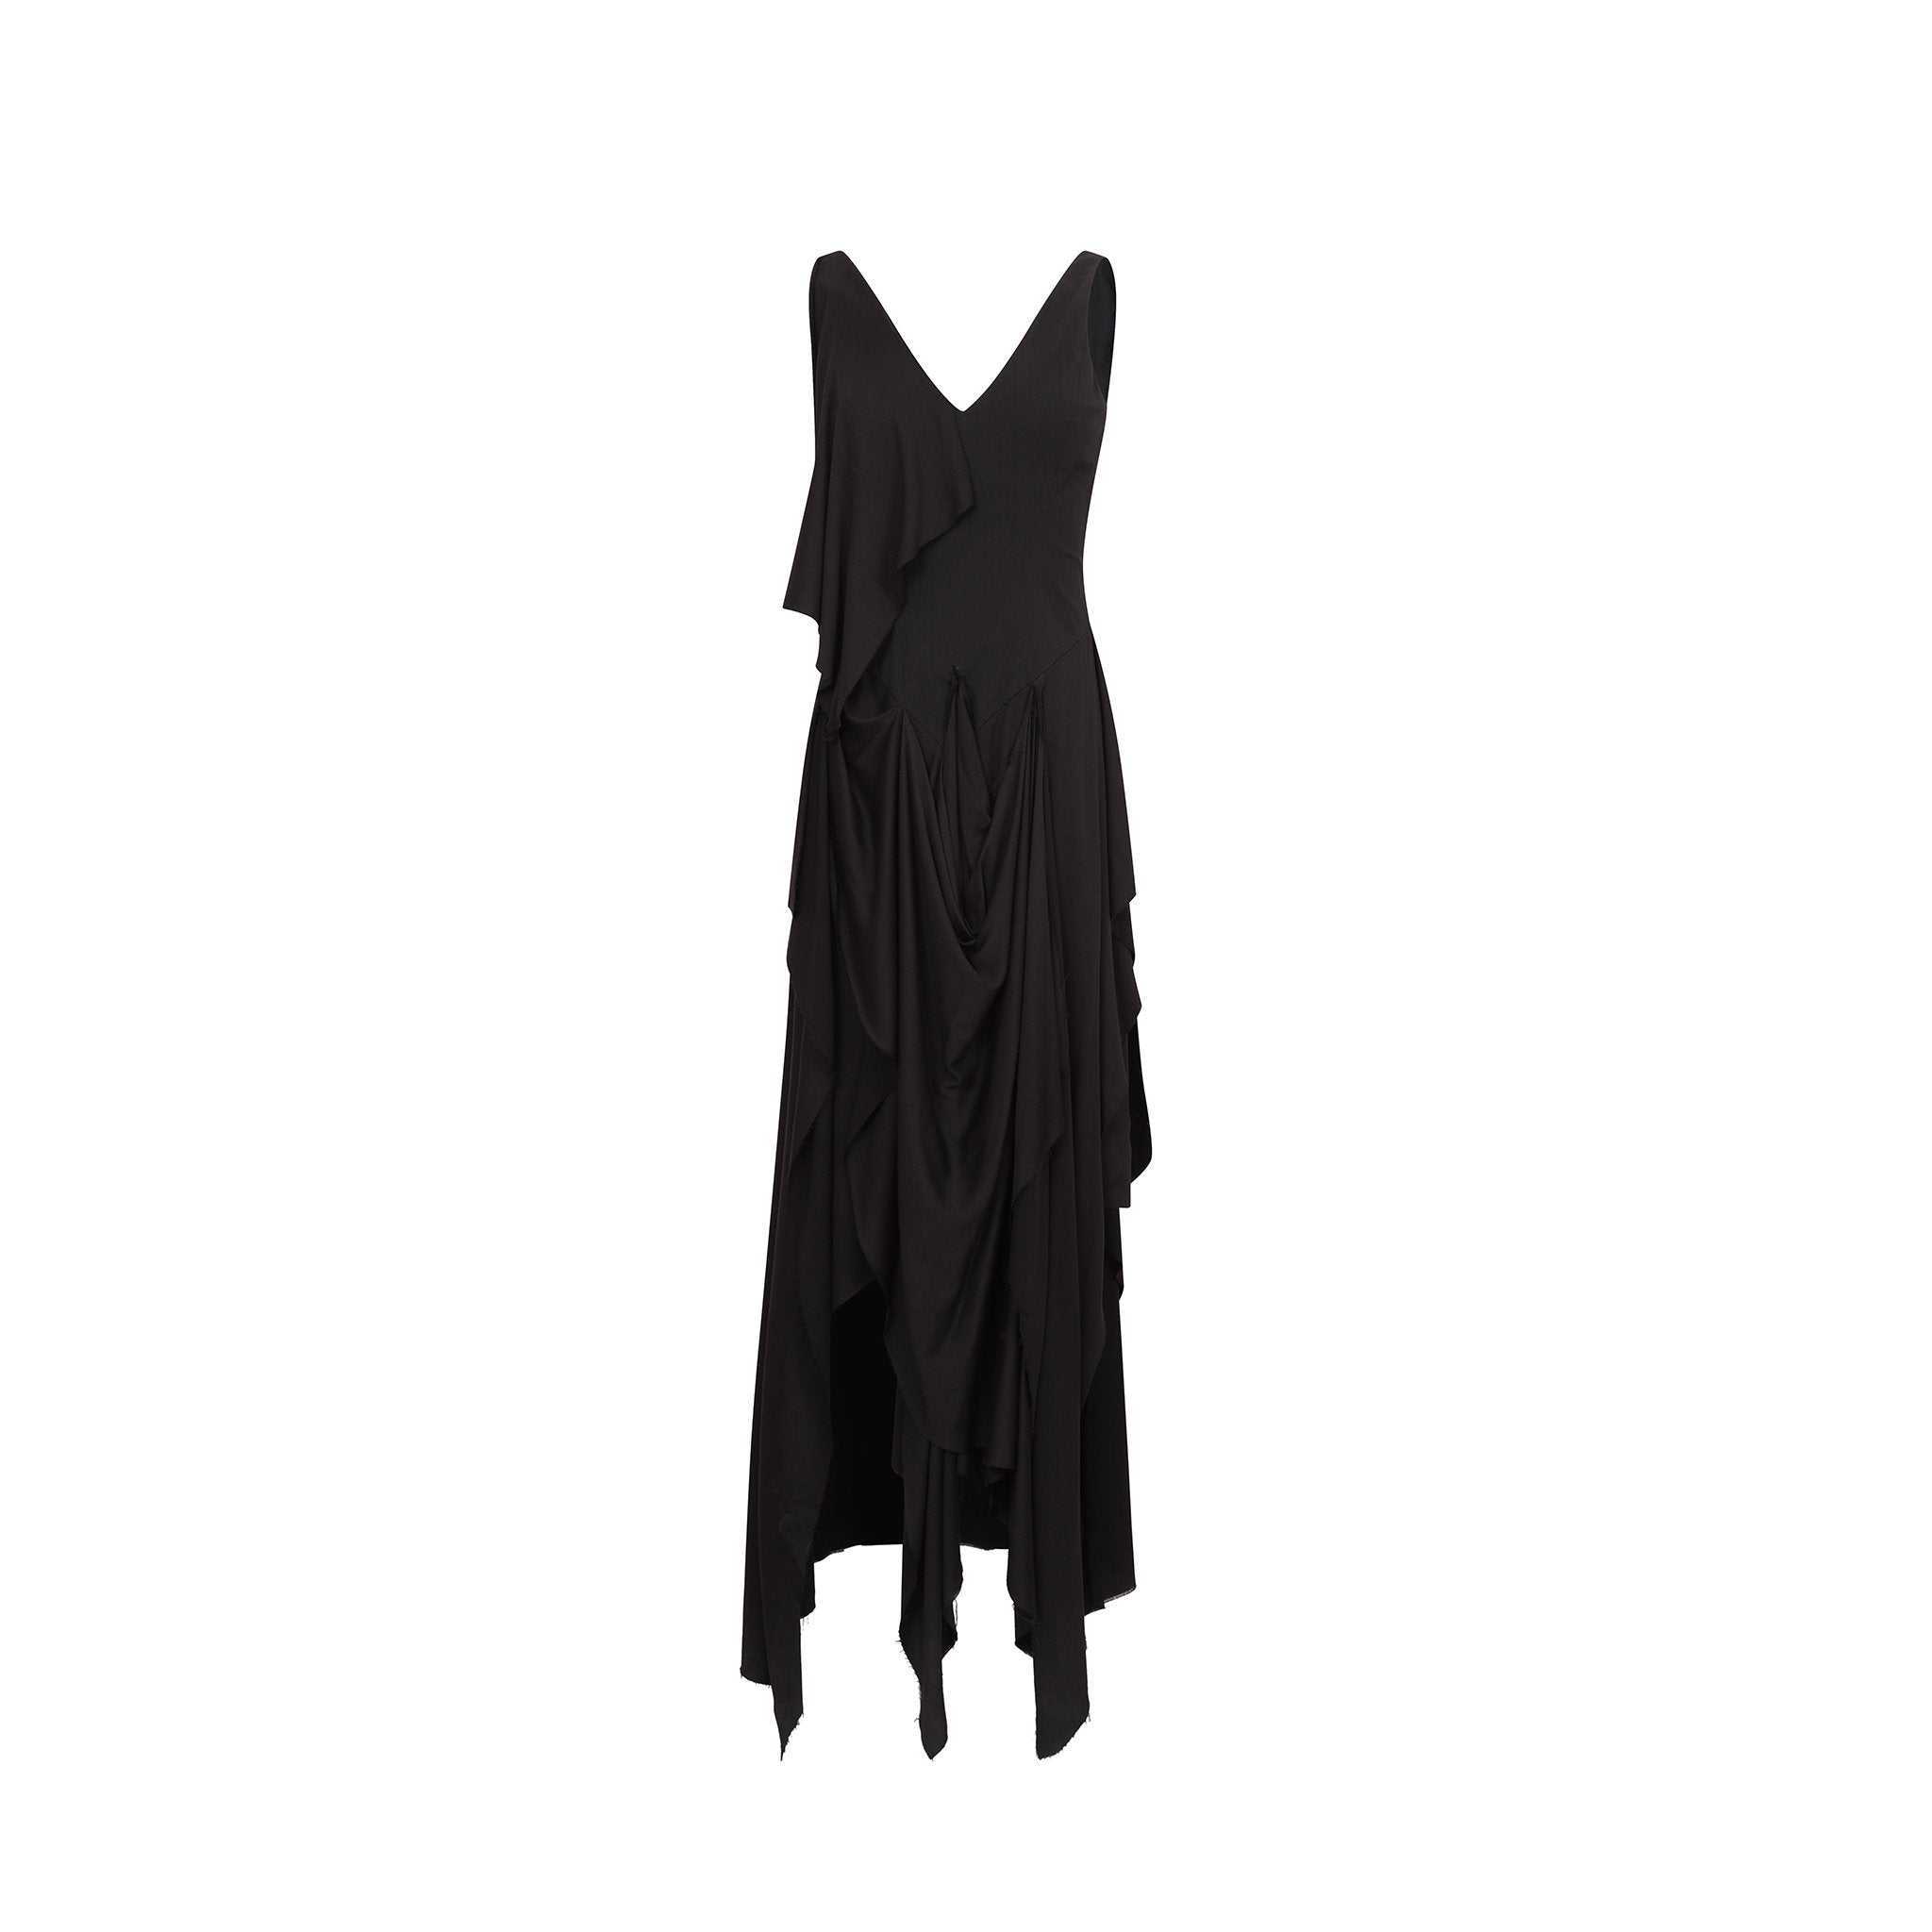 ELYWOOD Black Folded Layer Dress Sleeveless | MADA IN CHINA